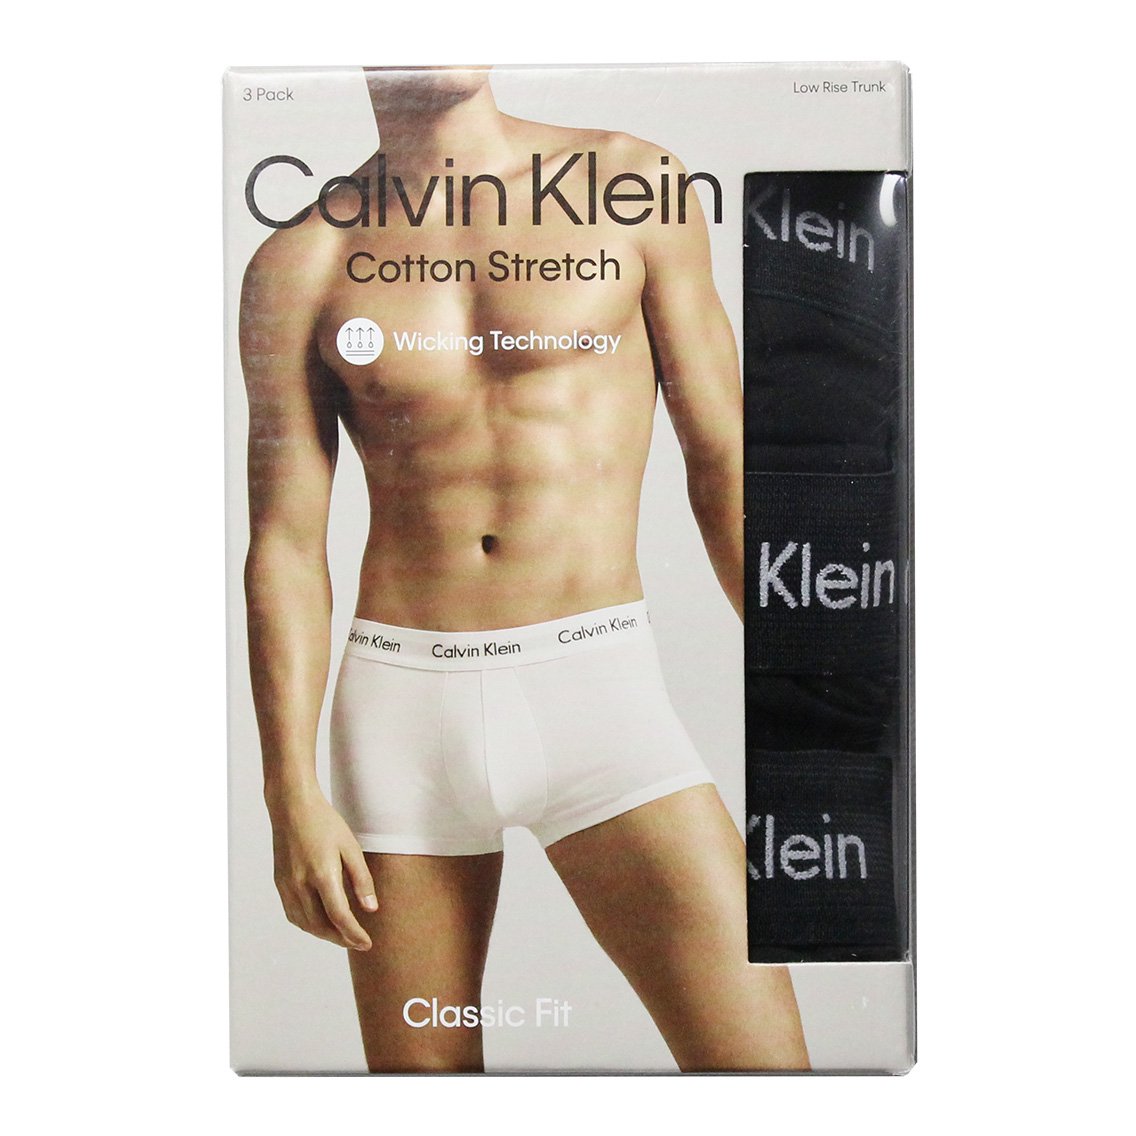 Calvin Klein(カルバンクライン)[NB2614-001]:ボクサーパンツ,男性下着 